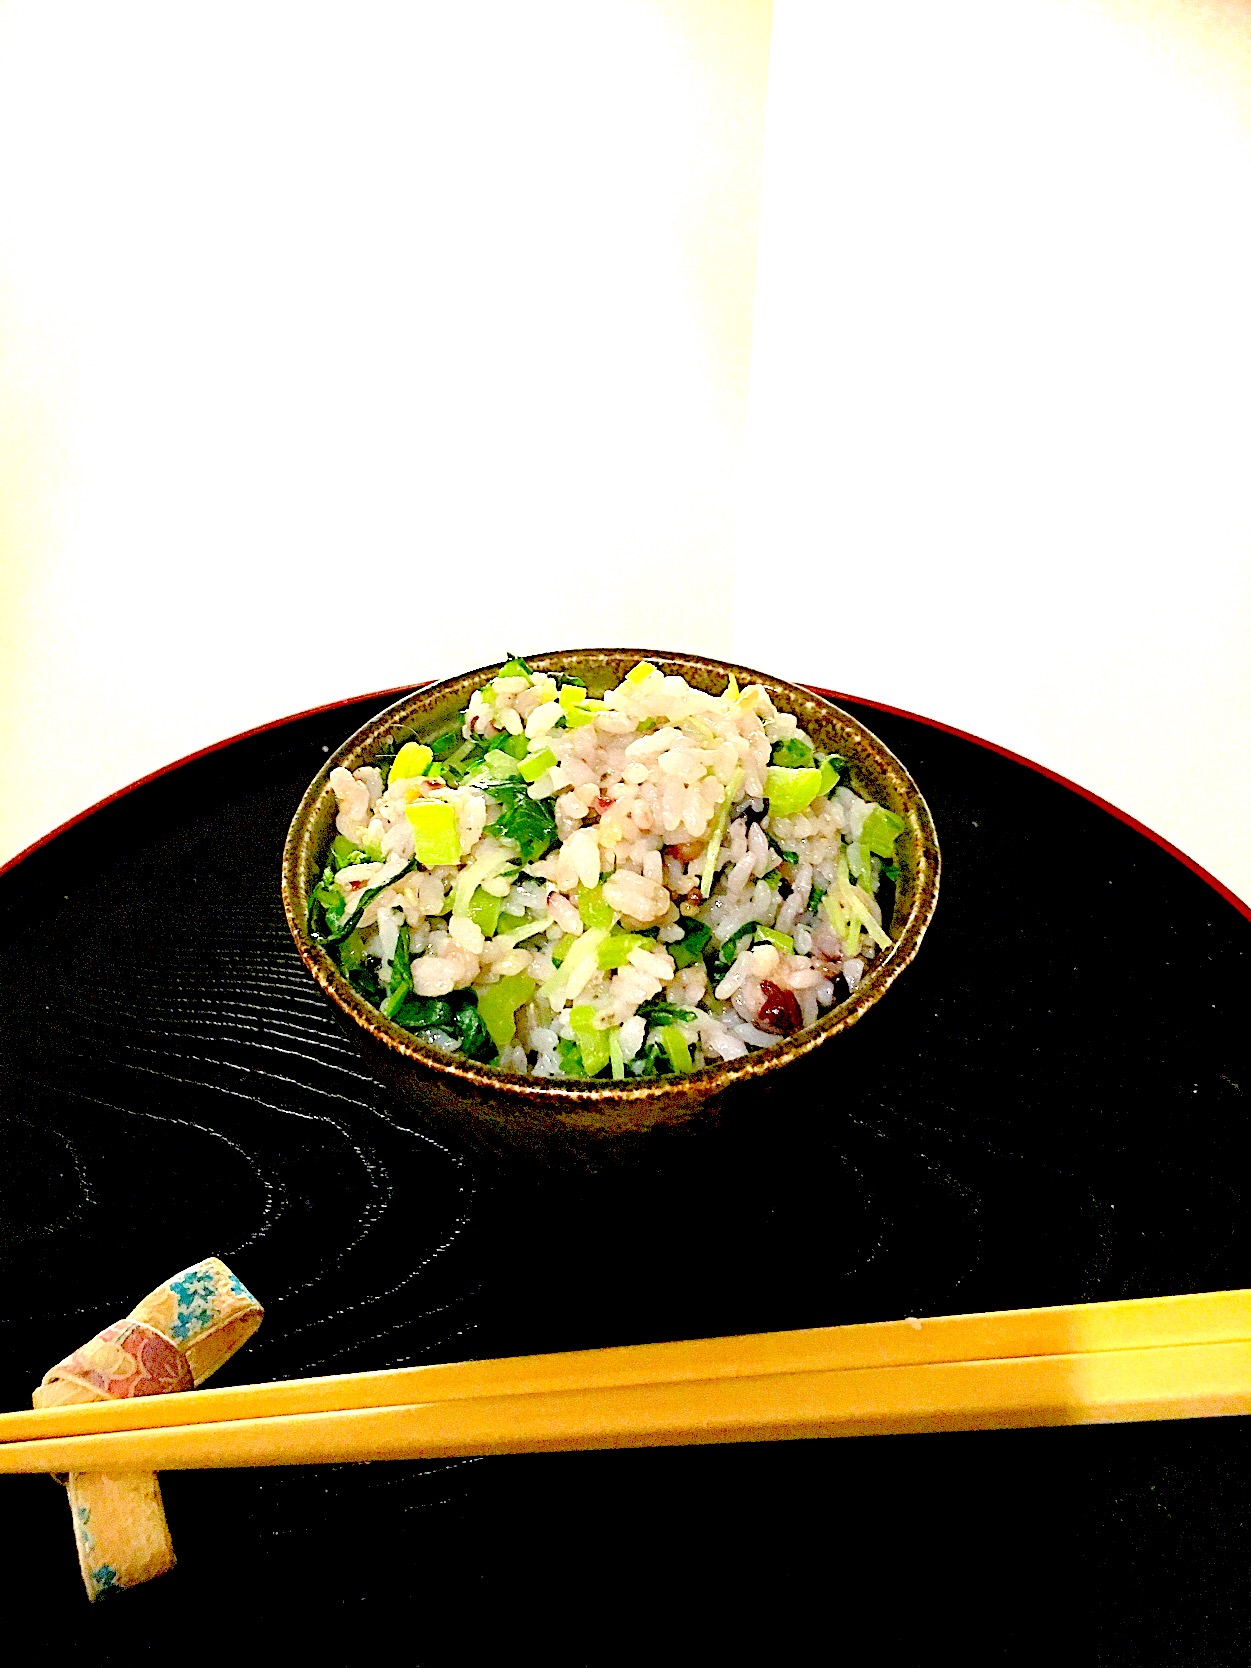 大根菜飯 十六雑穀米